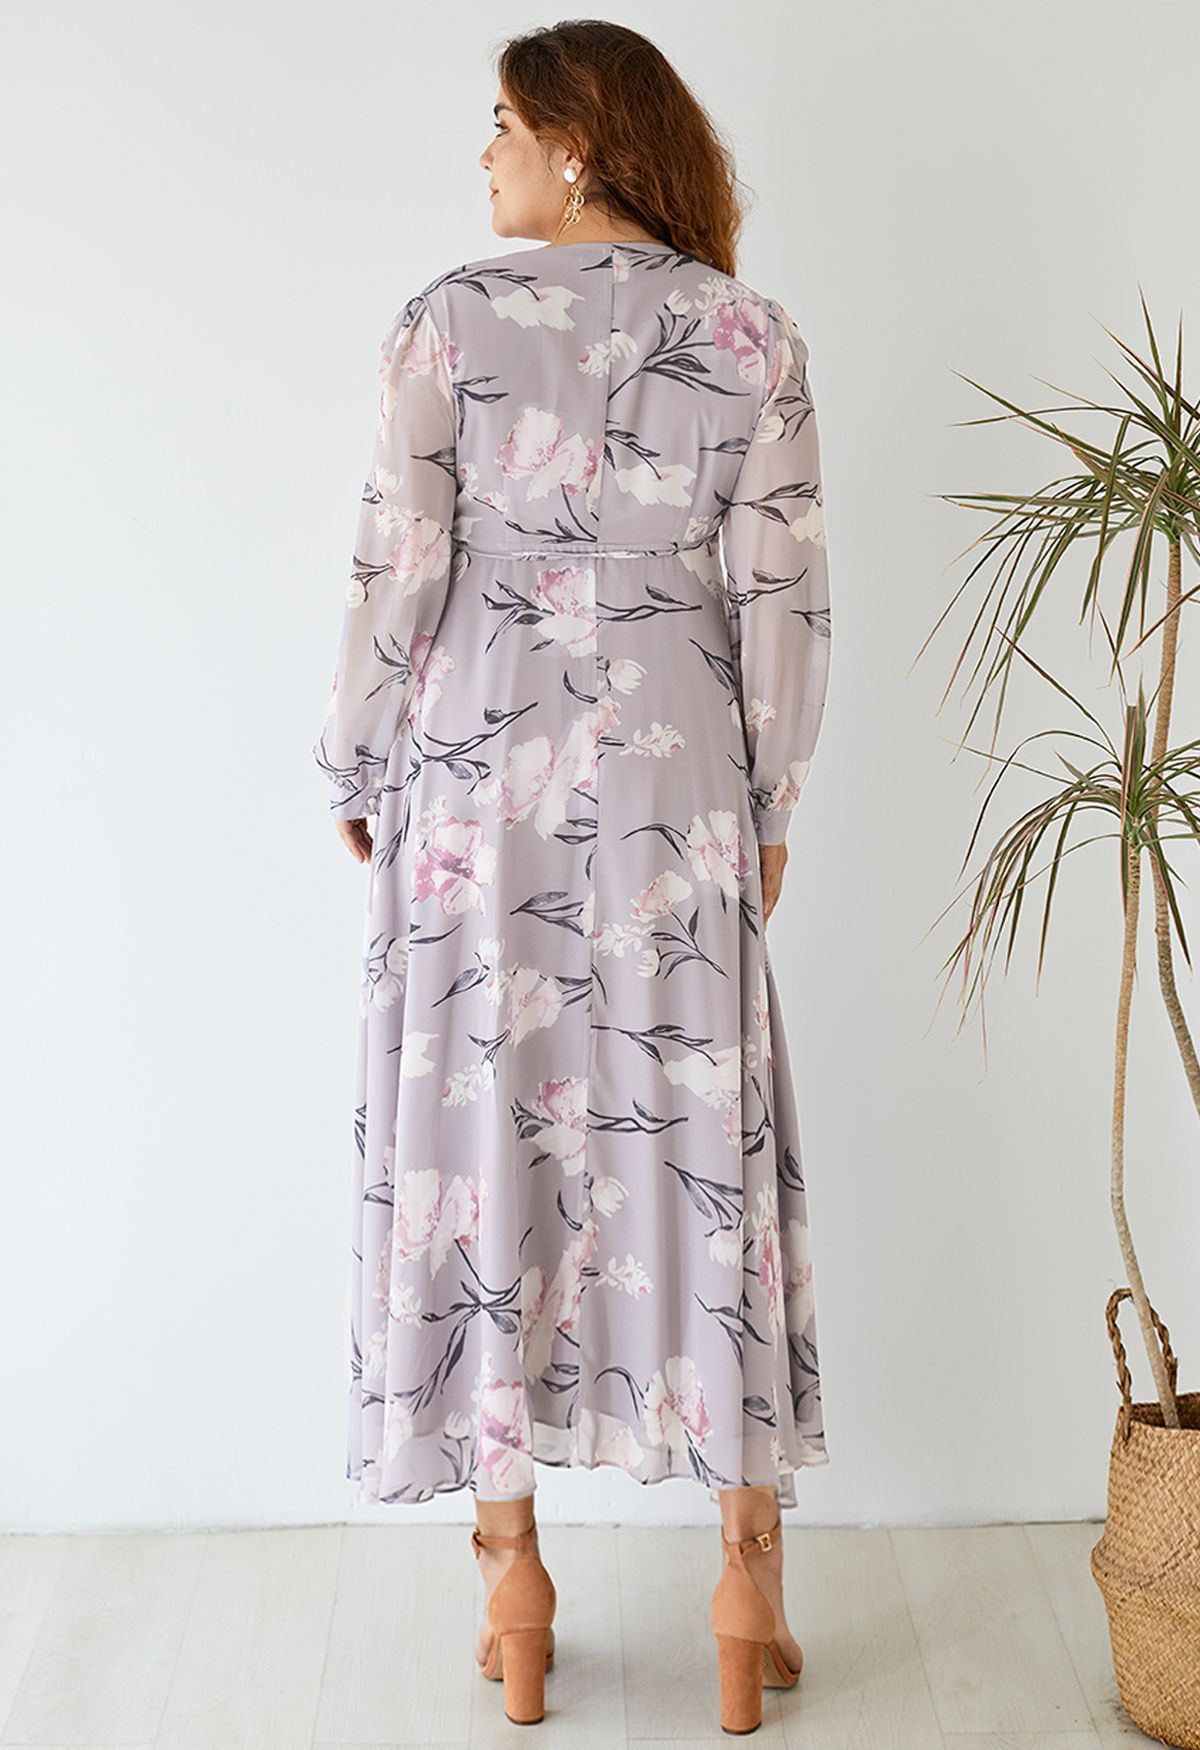 Impressionante vestido longo de chiffon com estampa floral lavanda